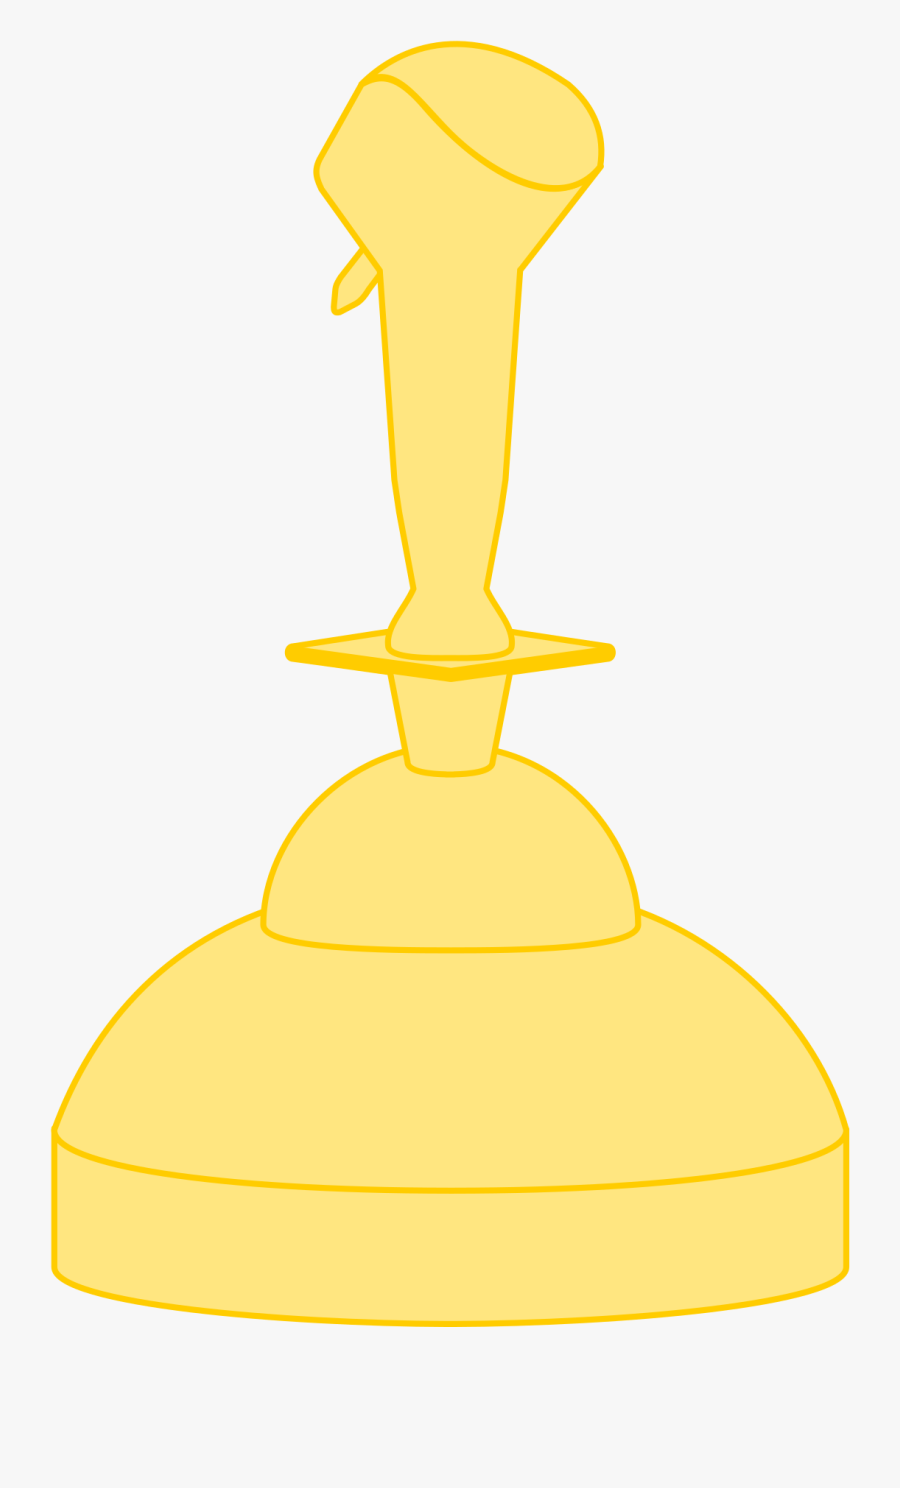 Golden Joystick Awards 2018 Logo, Transparent Clipart